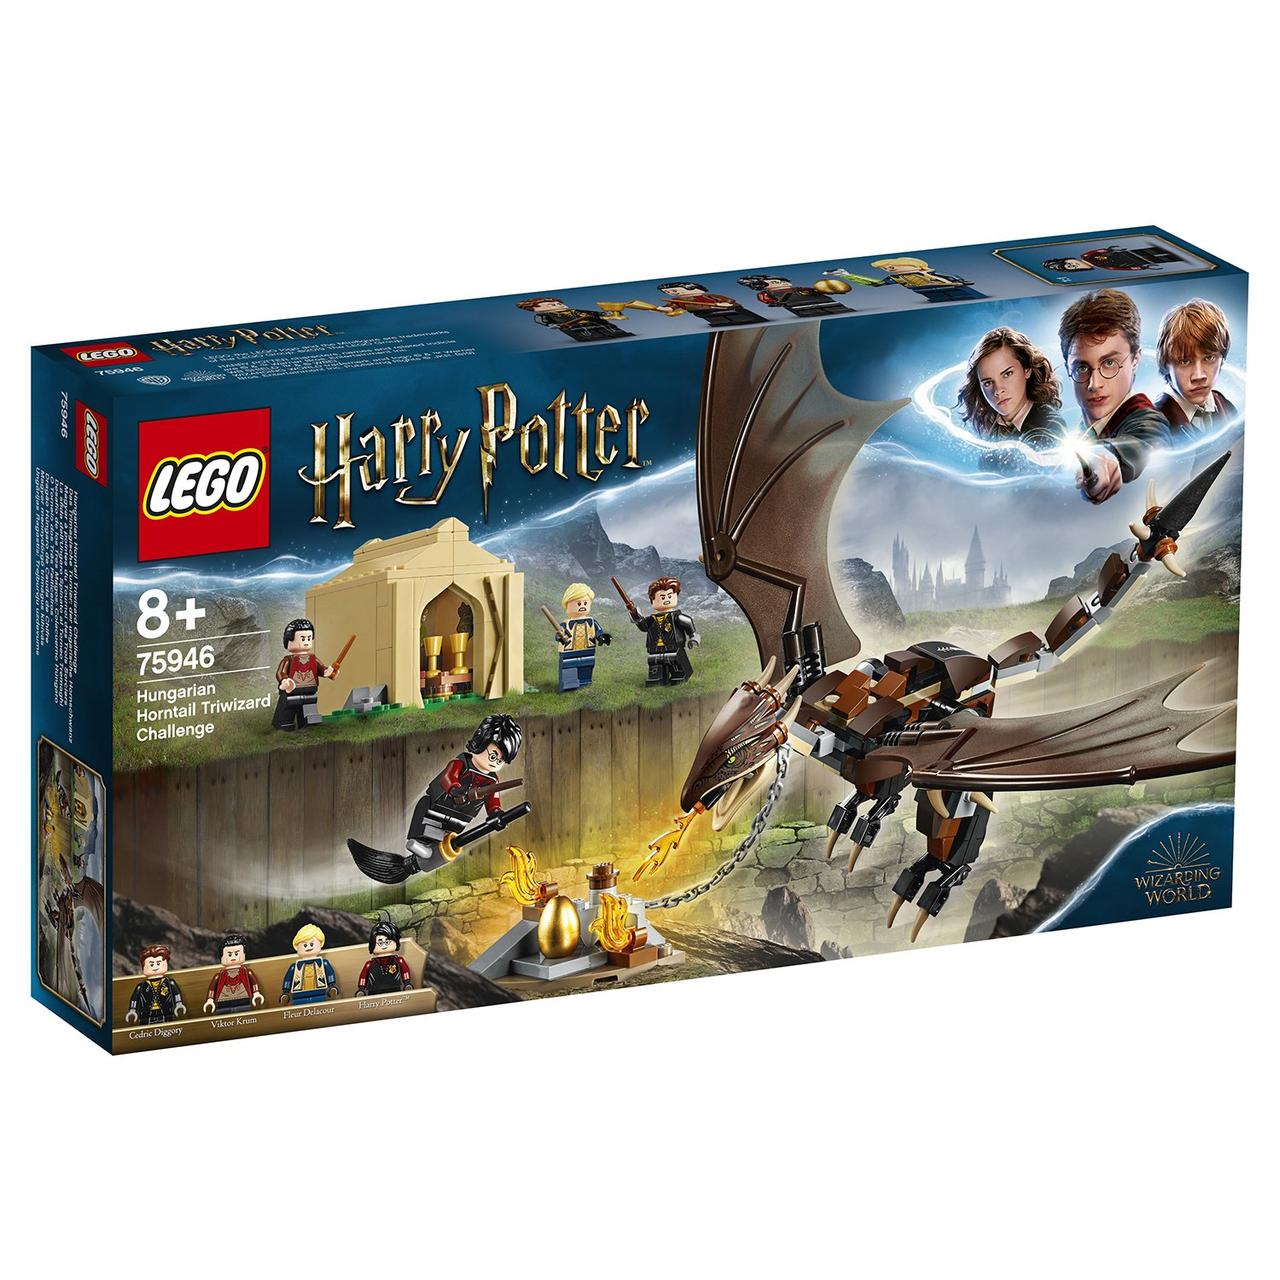 75946 Lego Harry Potter Турнир трёх волшебников: Венгерская хвосторога, Лего Гарри Поттер